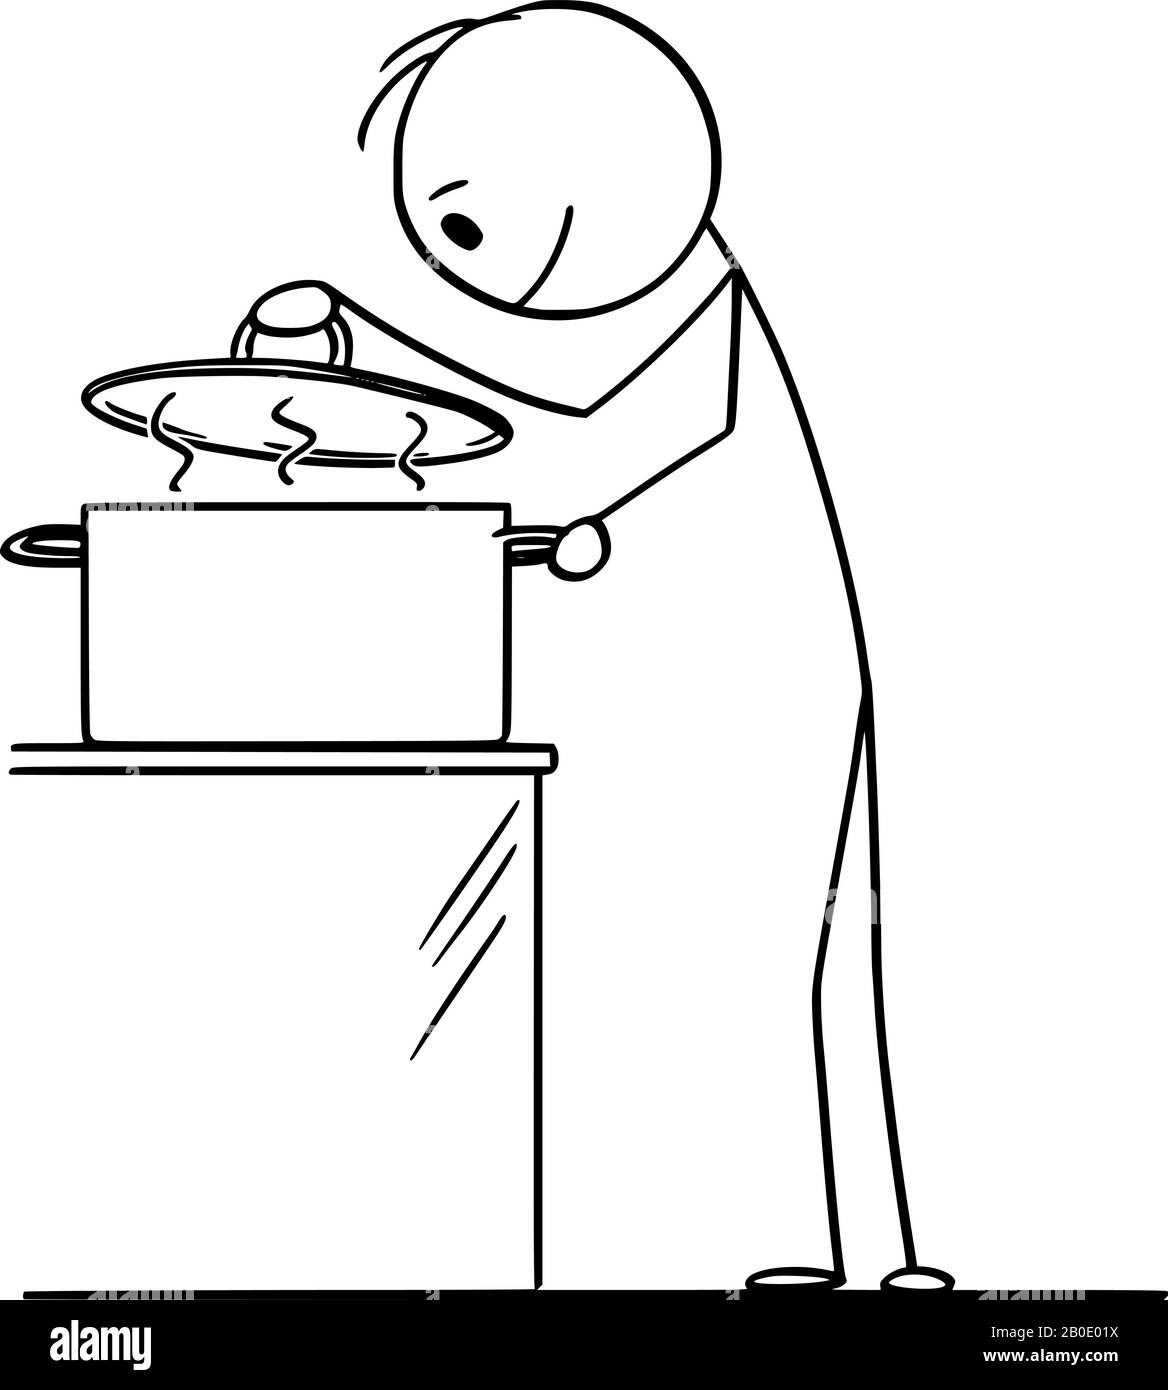 Dessin de dessin de dessin de dessin de dessin de dessin de dessin de dessin conceptuel de l'homme curieux affamé ou cuisinier regardant sur la nourriture chaude à l'intérieur de la marmite de cuisson. Illustration de Vecteur